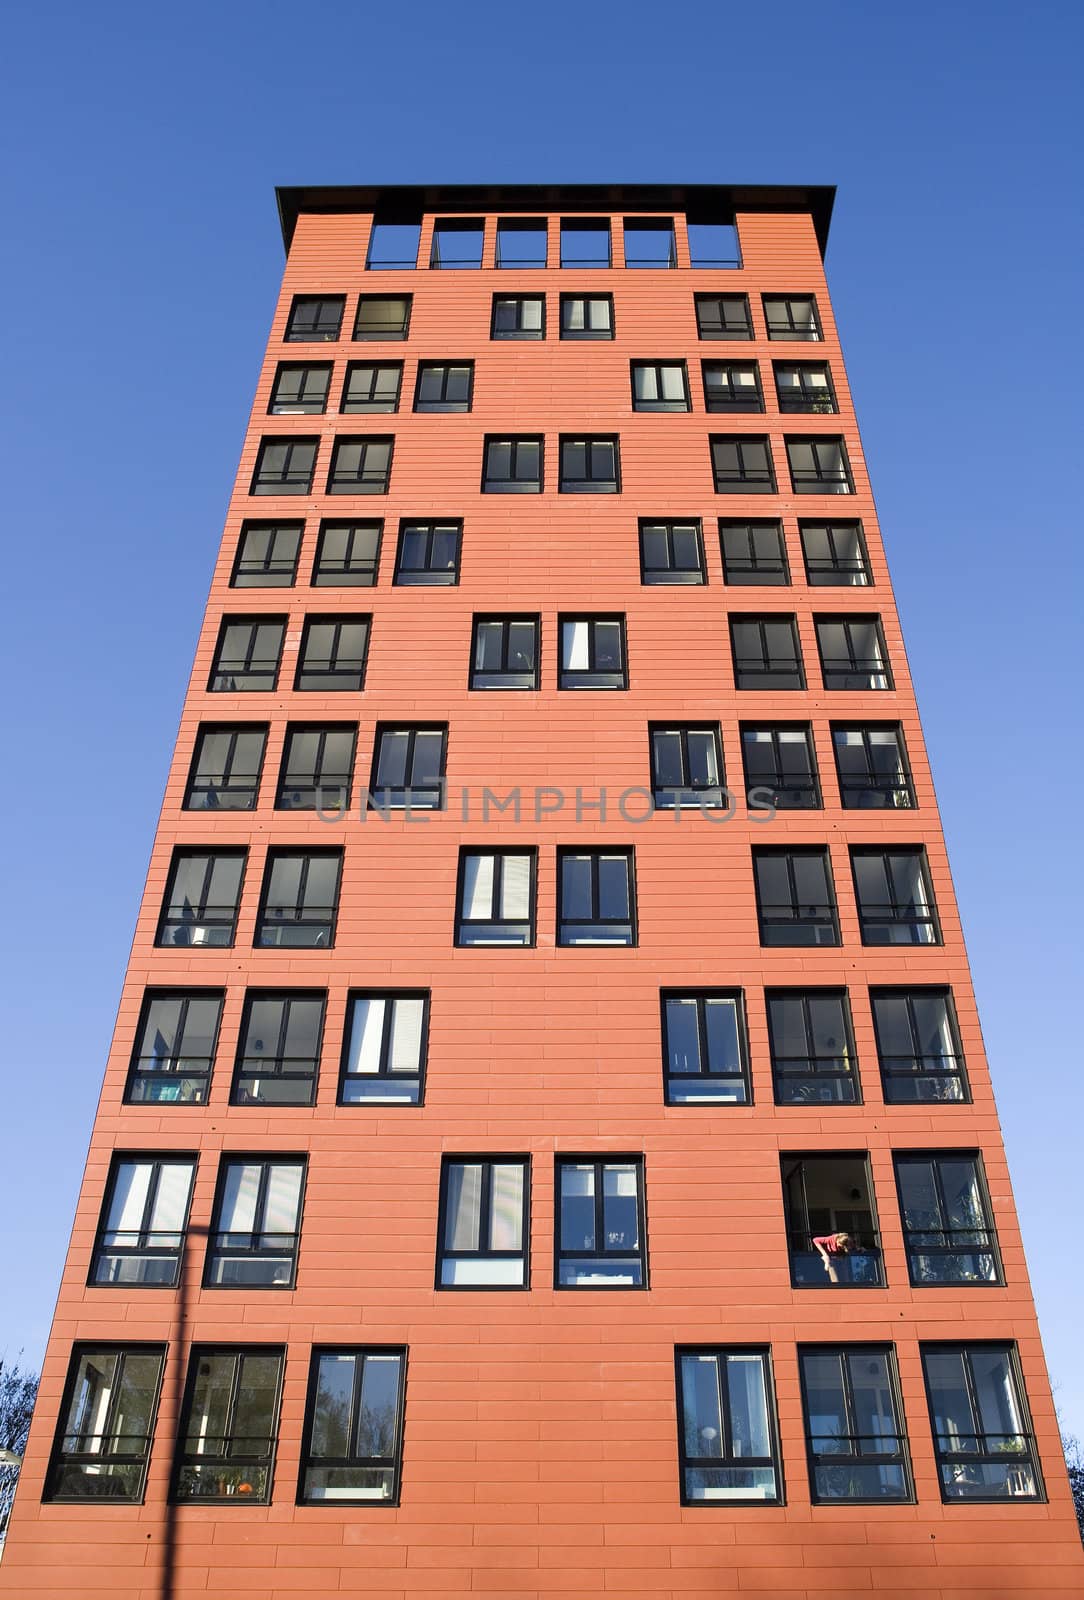 Building Exterior by gemenacom